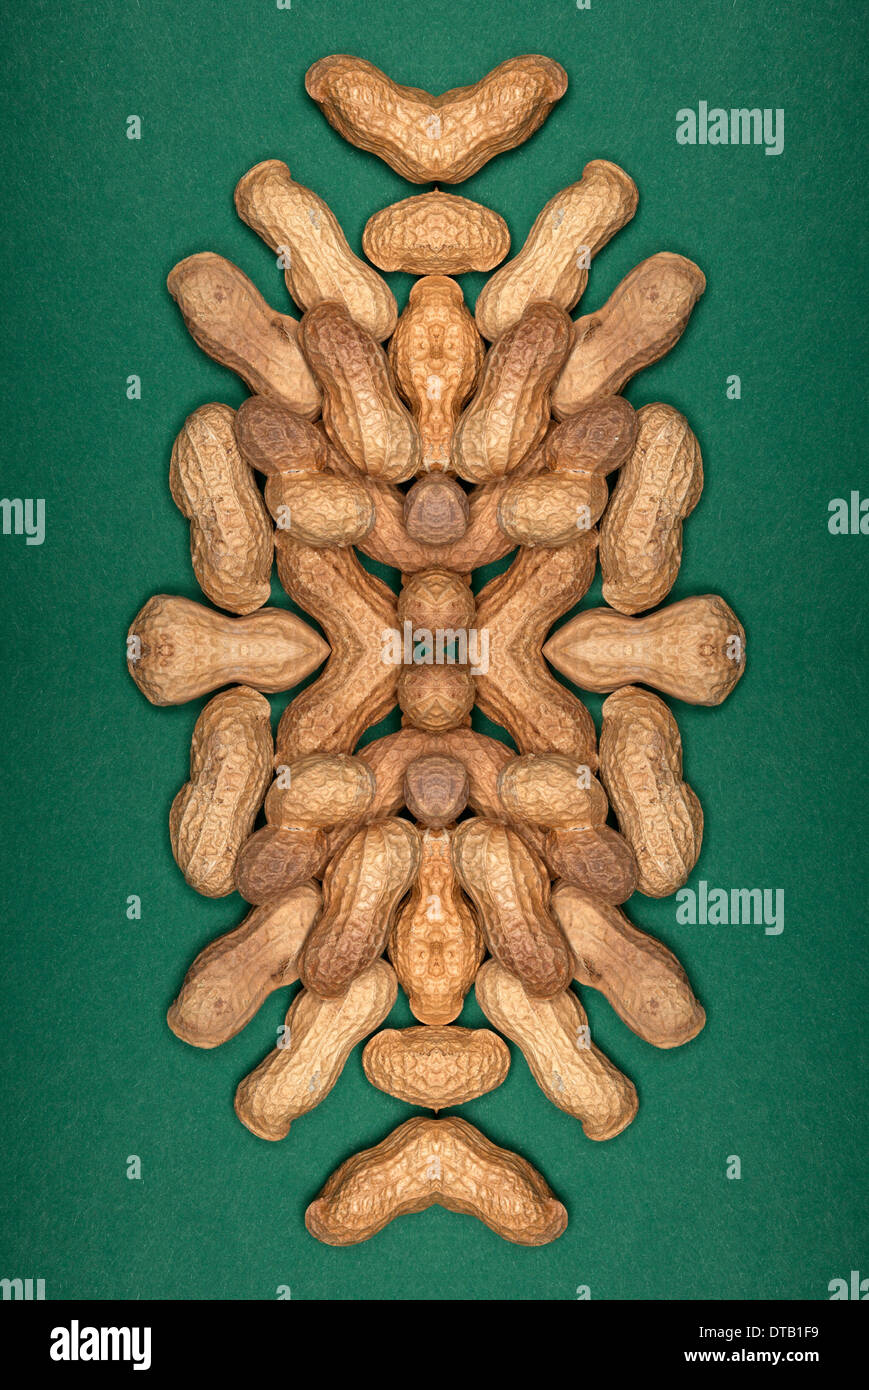 Eine digitale Zusammensetzung der gespiegelten Bildern einer Anordnung von Erdnüssen Stockfoto